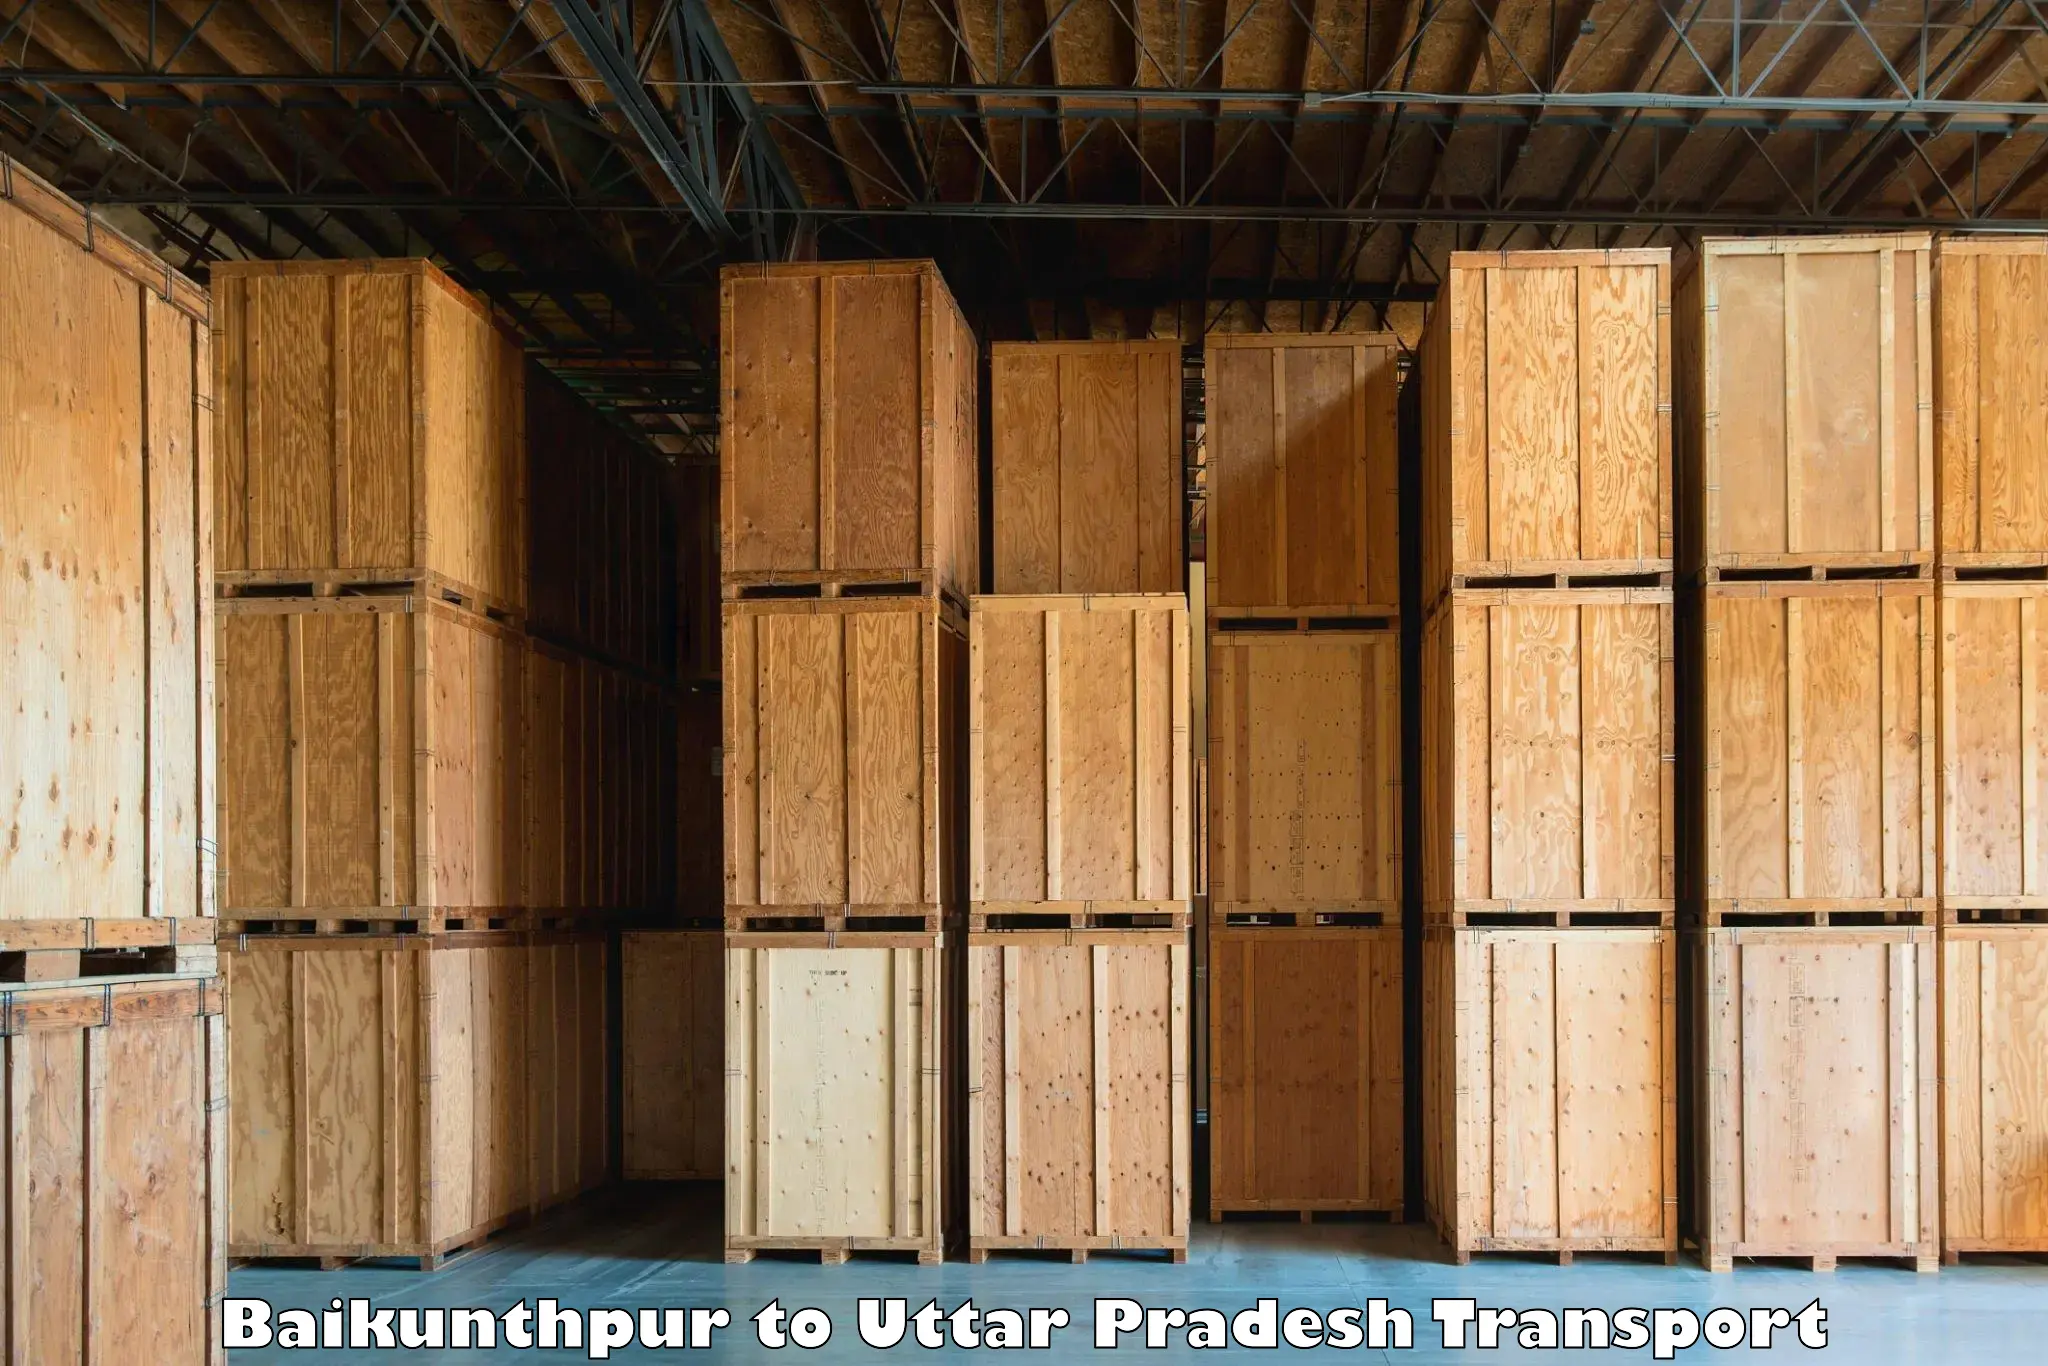 Cargo transport services in Baikunthpur to Ambedkar Nagar